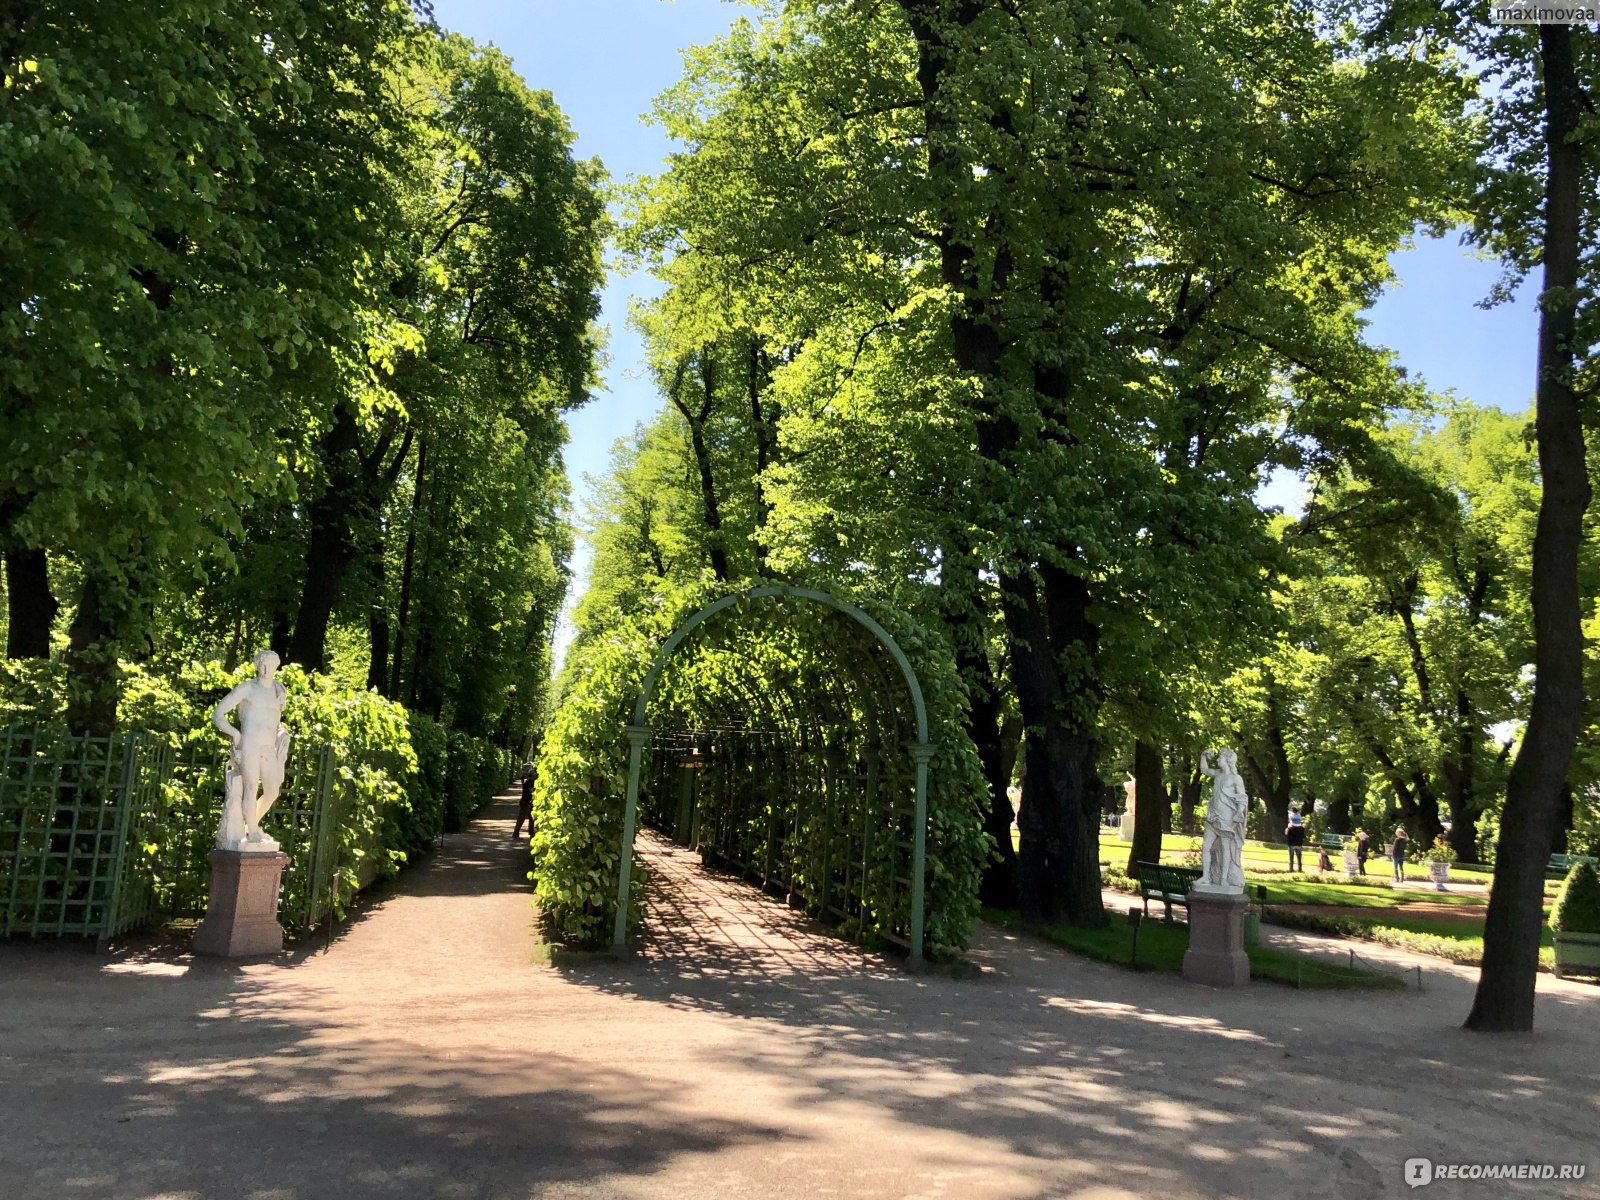 Летний сад в Санкт-Петербурге - жемчужина для вашей копилки впечатлений